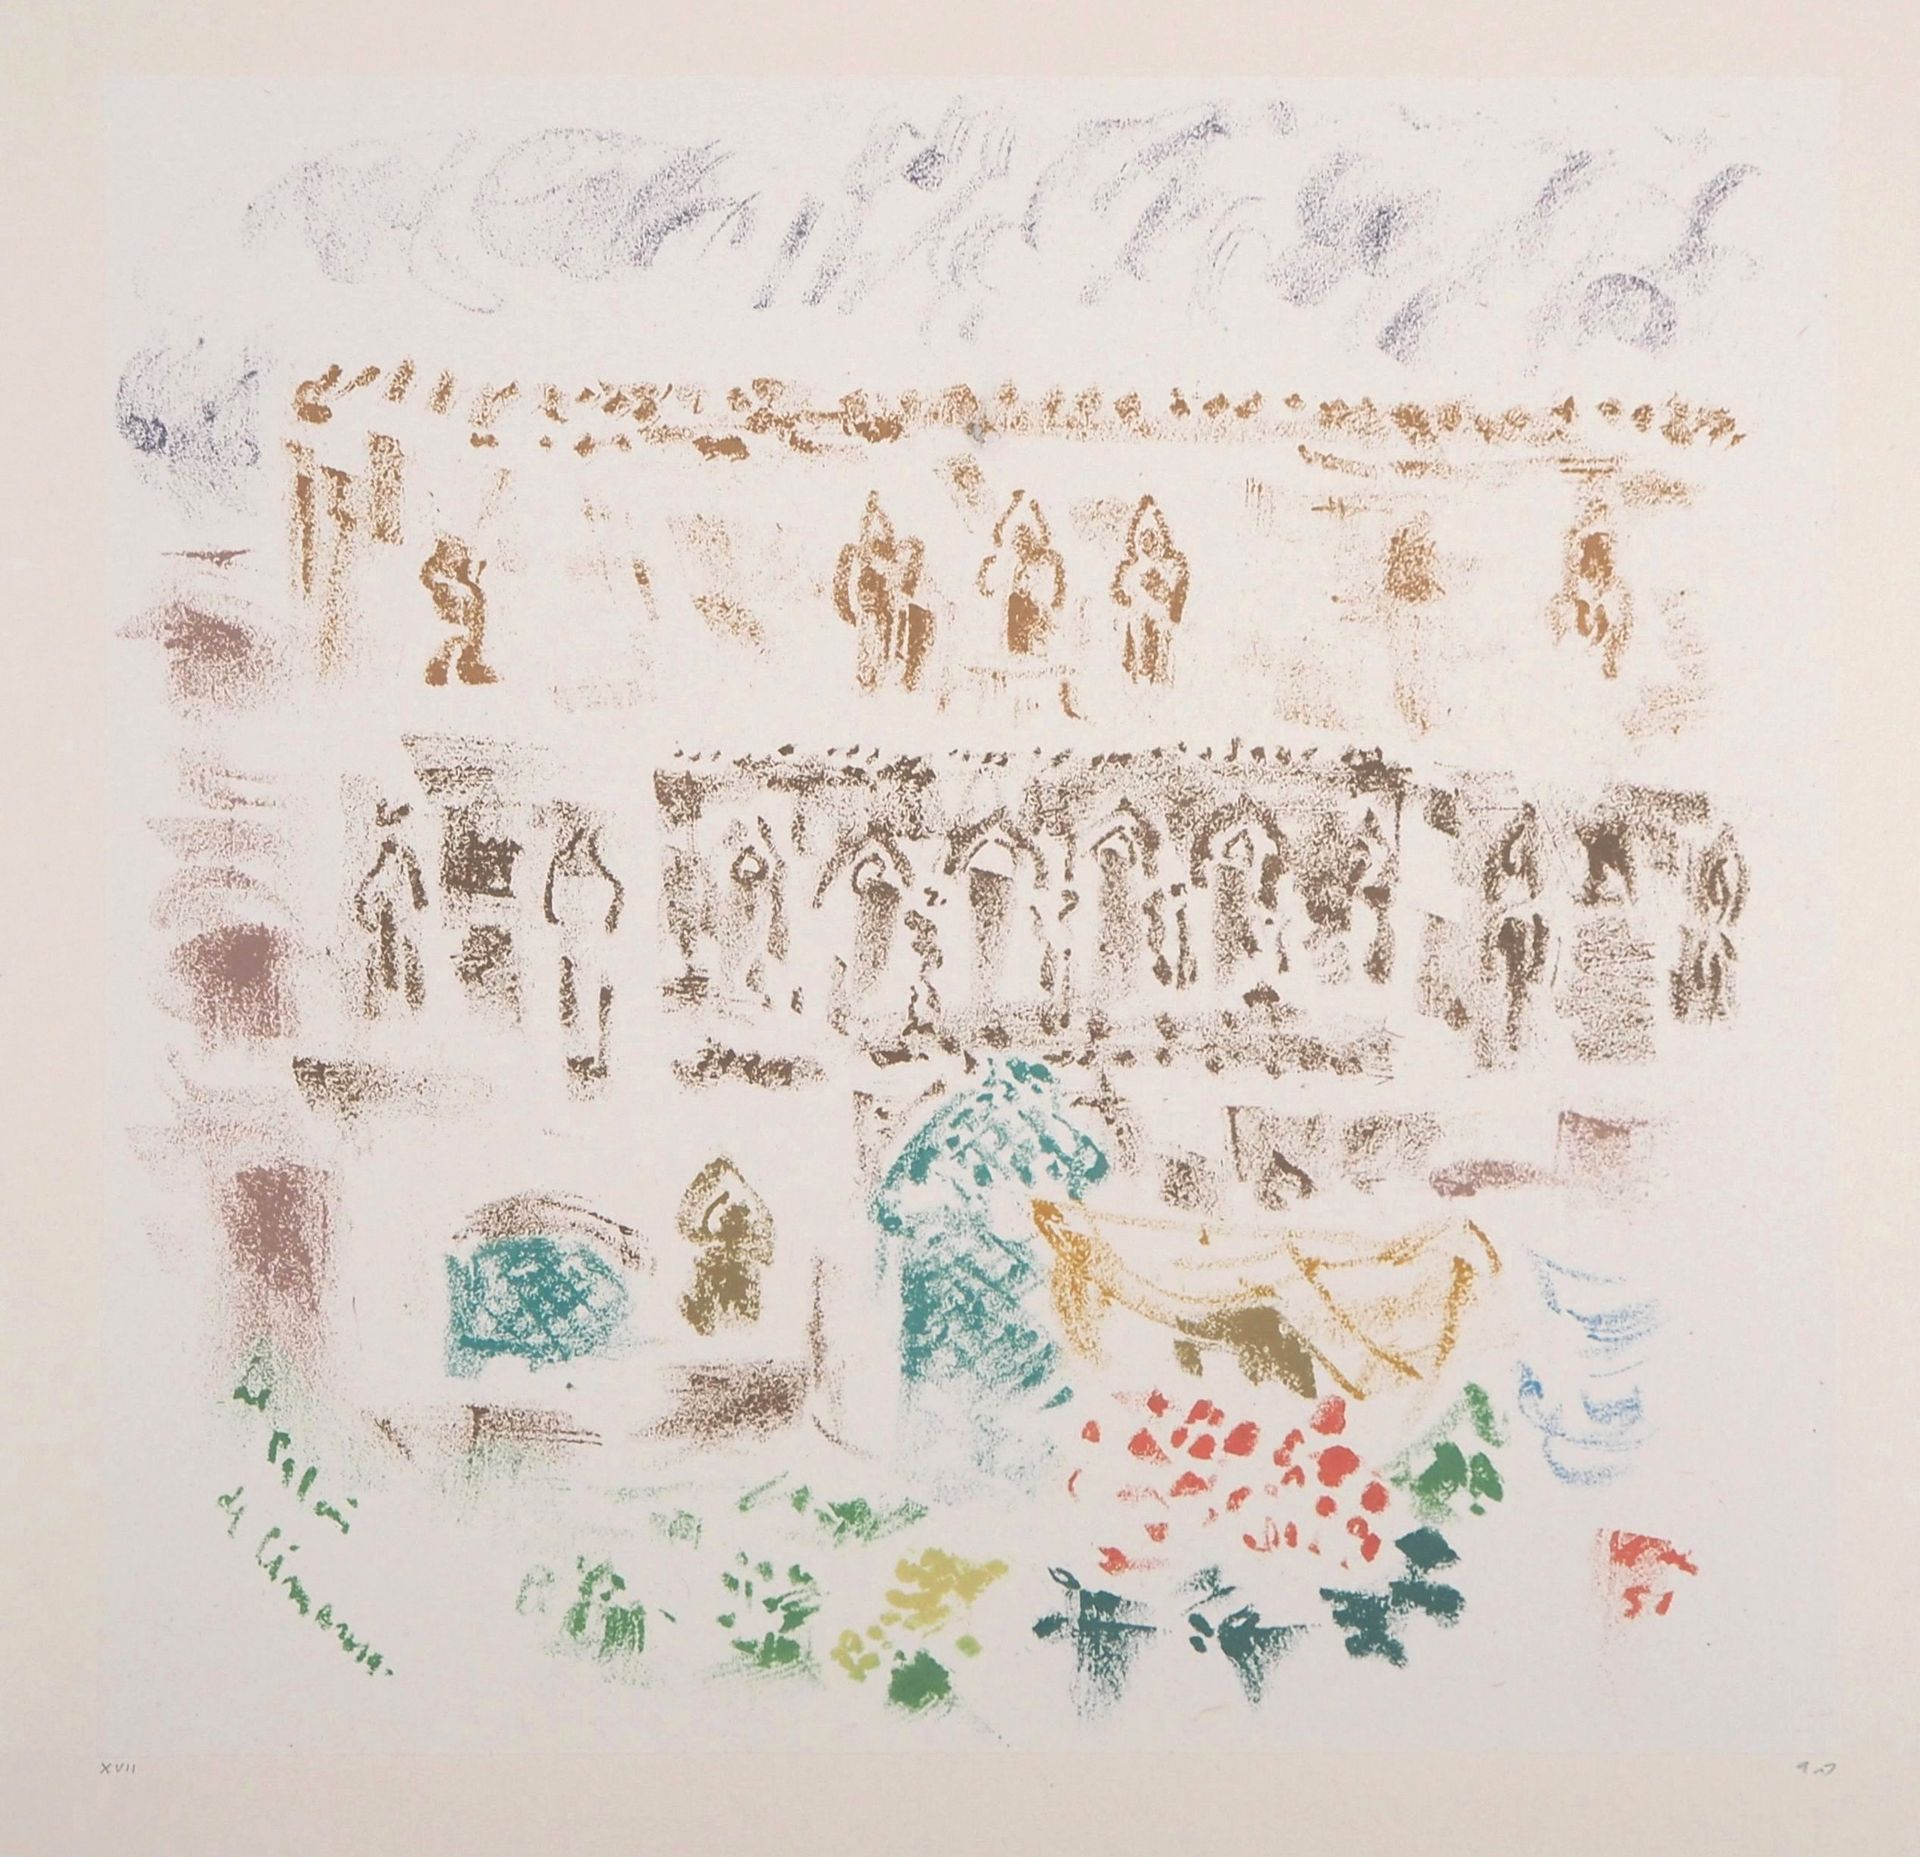 André MASSON André MASSON

西马罗萨宫，威尼斯

原始石版画

签有艺术家的字样

涂在牛皮纸上的瓷纸，37.5 x 52.5厘米

&hellip;